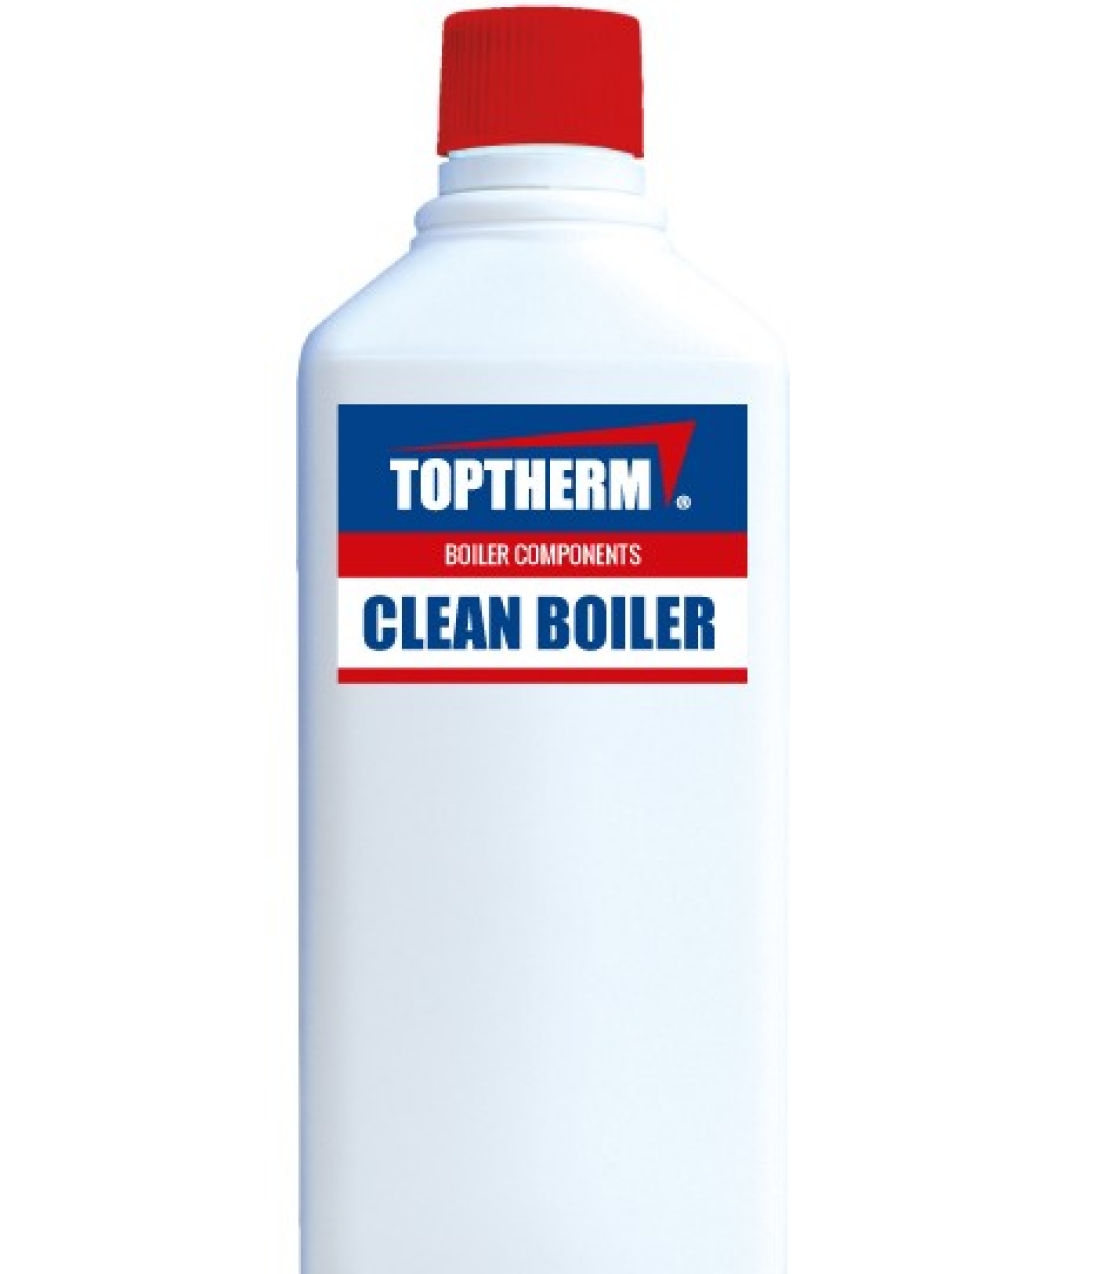 CLEAN BOILER rekomendowana chemia do czyszczenia kotła